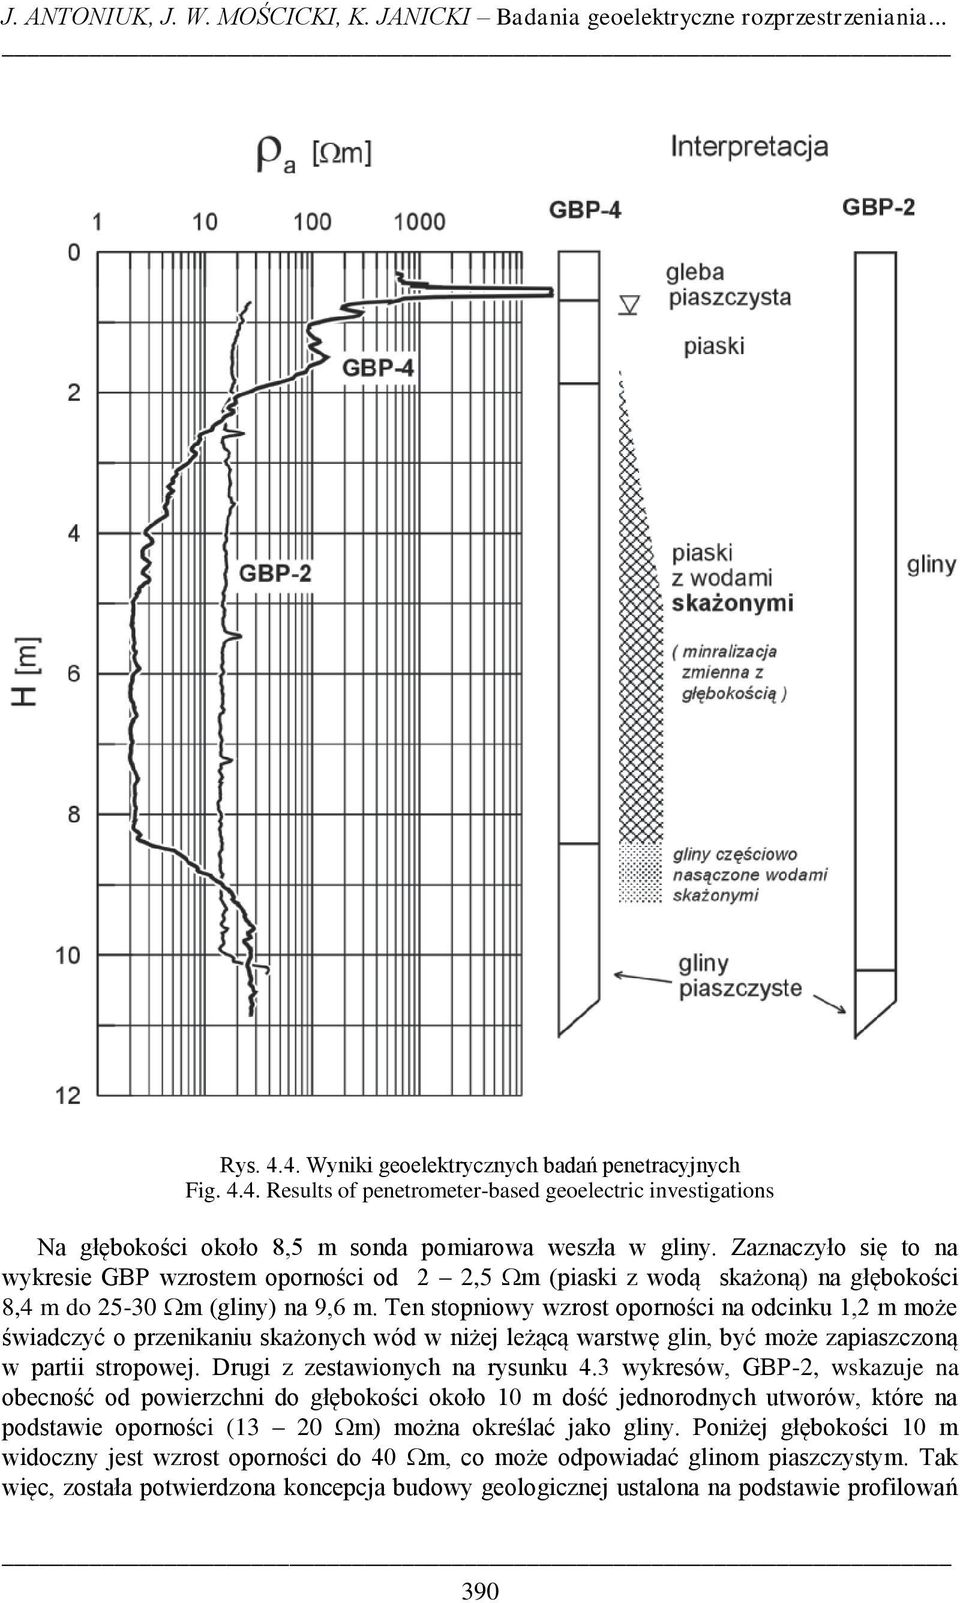 Zaznaczyło się to na wykresie GBP wzrostem oporności od 2 2,5 m (piaski z wodą skażoną) na głębokości 8,4 m do 25-30 m (gliny) na 9,6 m.